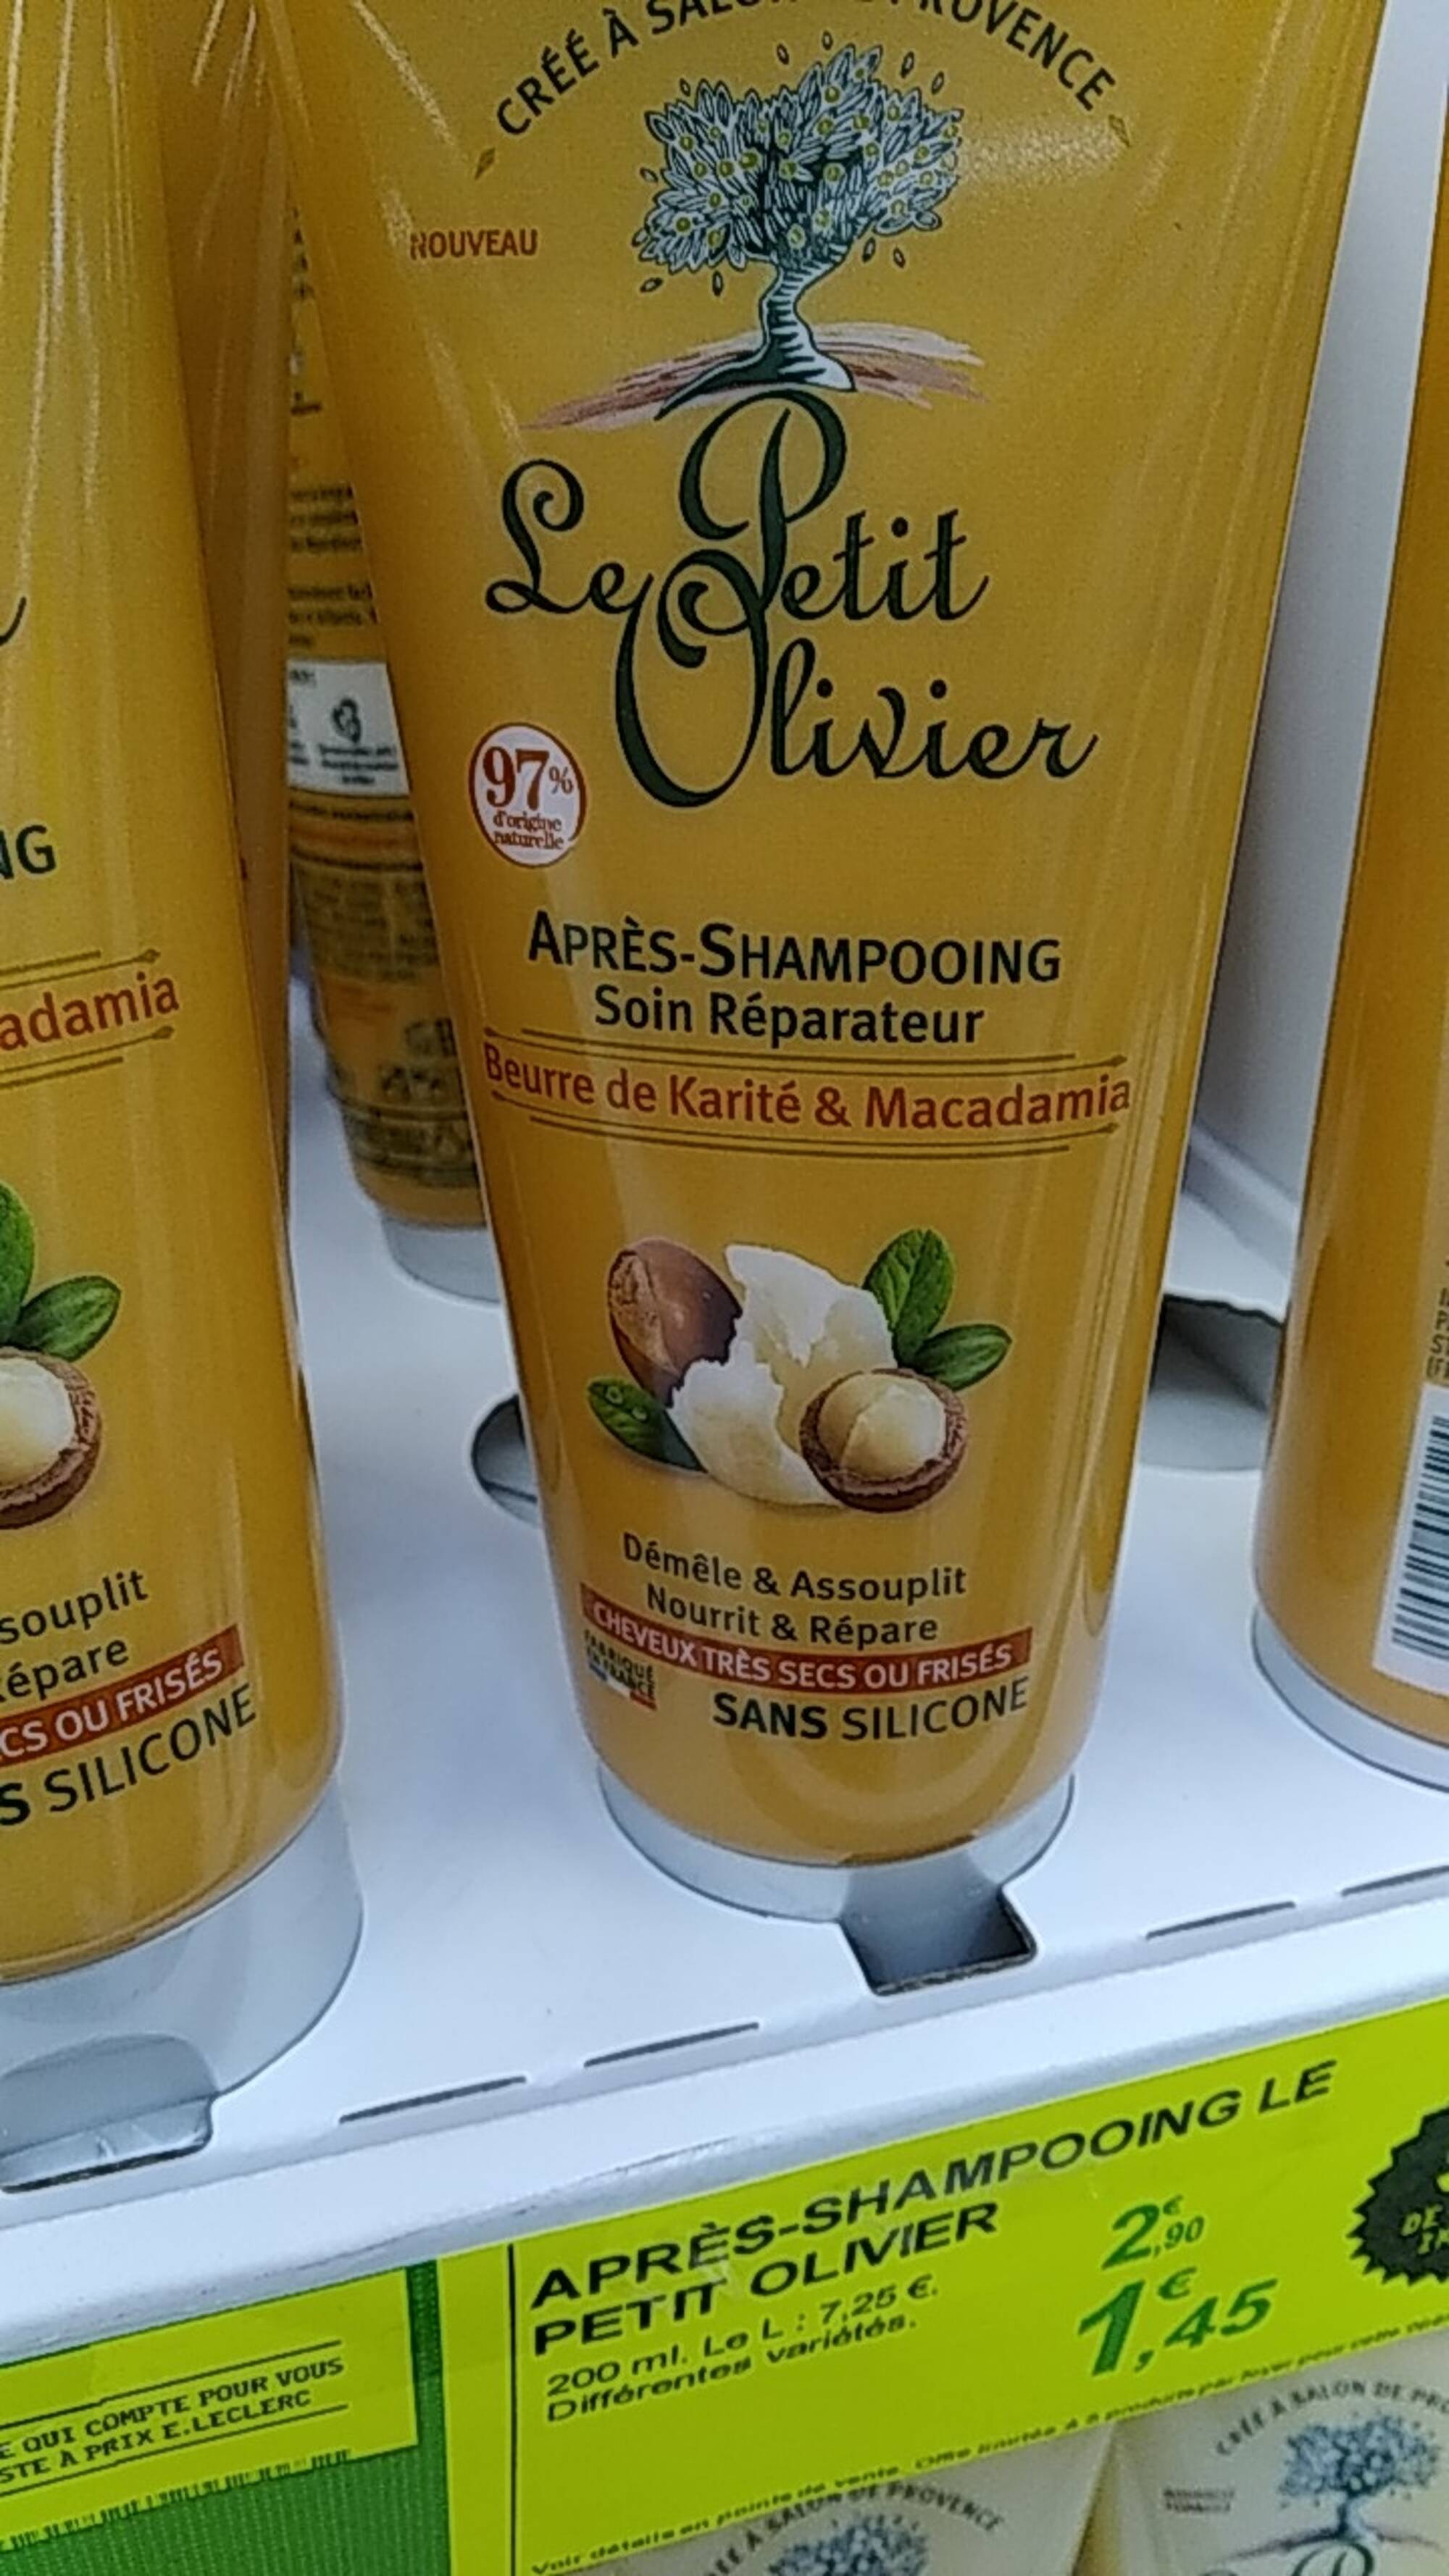 Après-Shampooing Soin Réparateur Le Petit Olivier, Beurre de